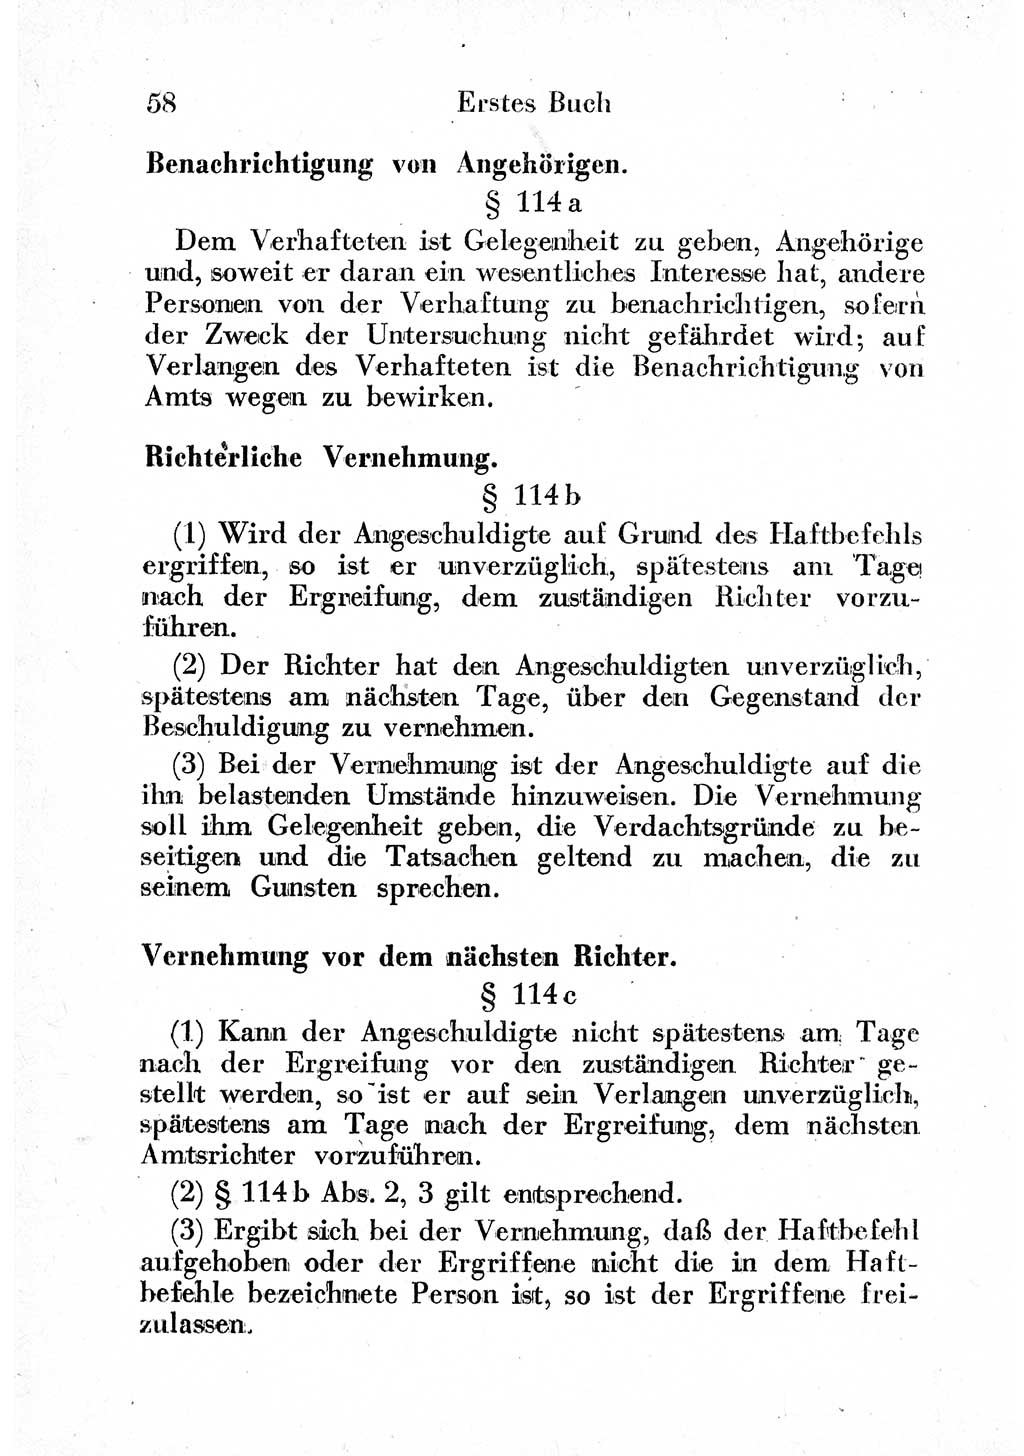 Strafprozeßordnung (StPO), Gerichtsverfassungsgesetz (GVG) und zahlreiche Nebengesetze der sowjetischen Besatzungszone (SBZ) in Deutschland 1949, Seite 58 (StPO GVG Ges. SBZ Dtl. 1949, S. 58)